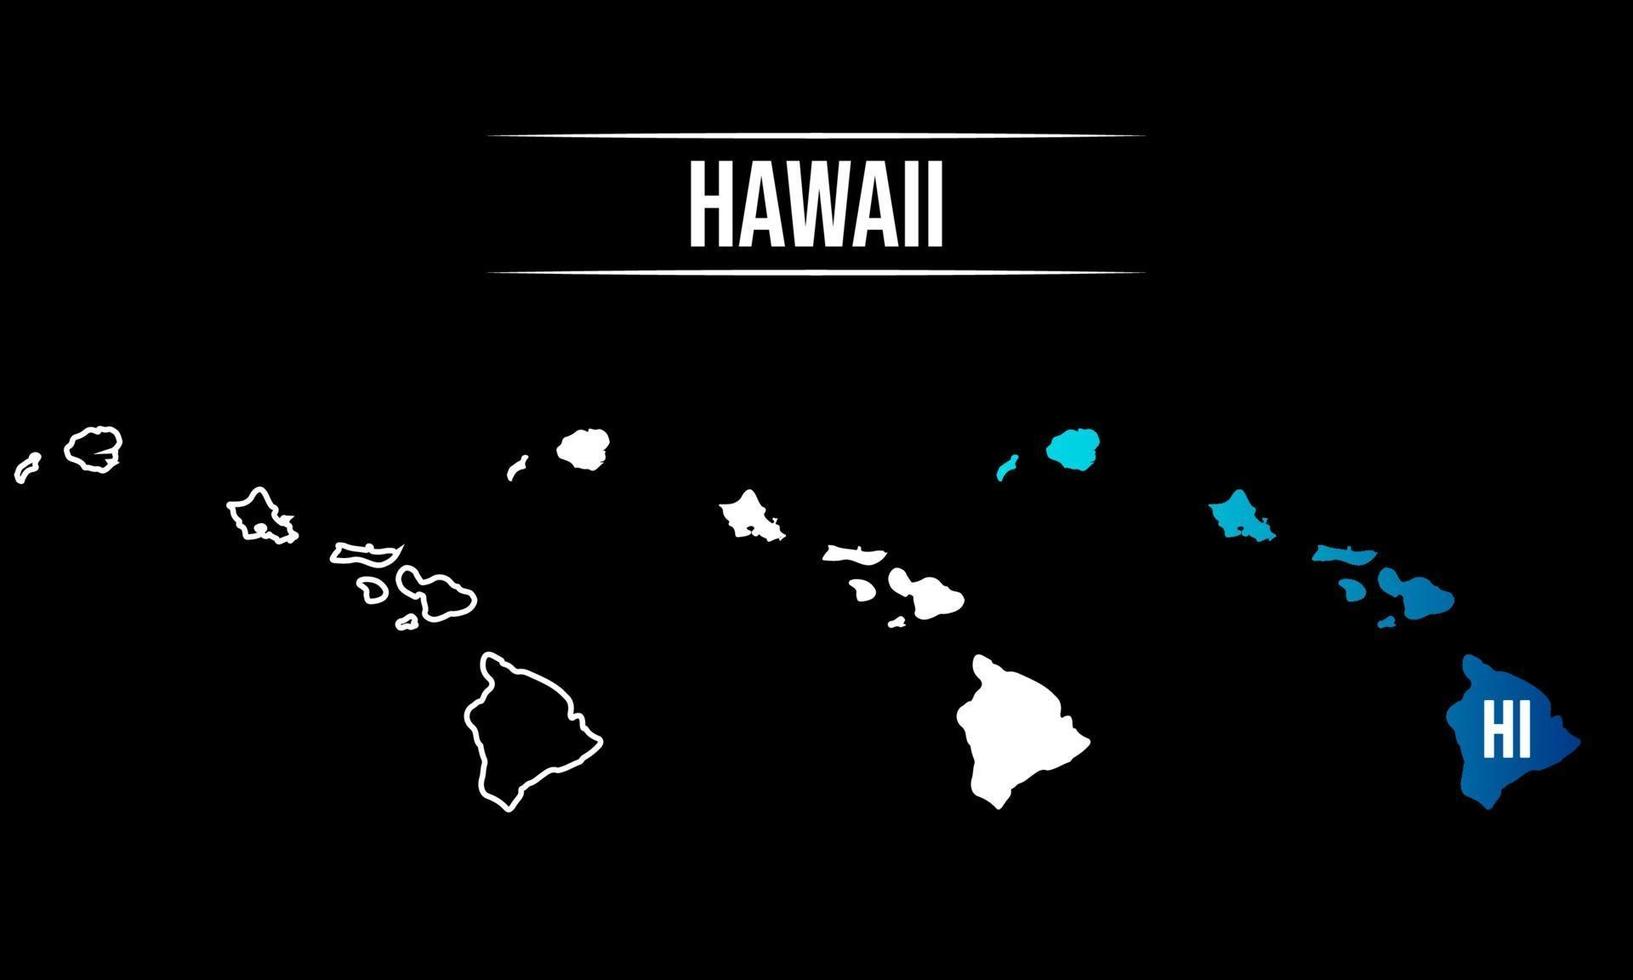 abstrakt hawaii statskarta design vektor